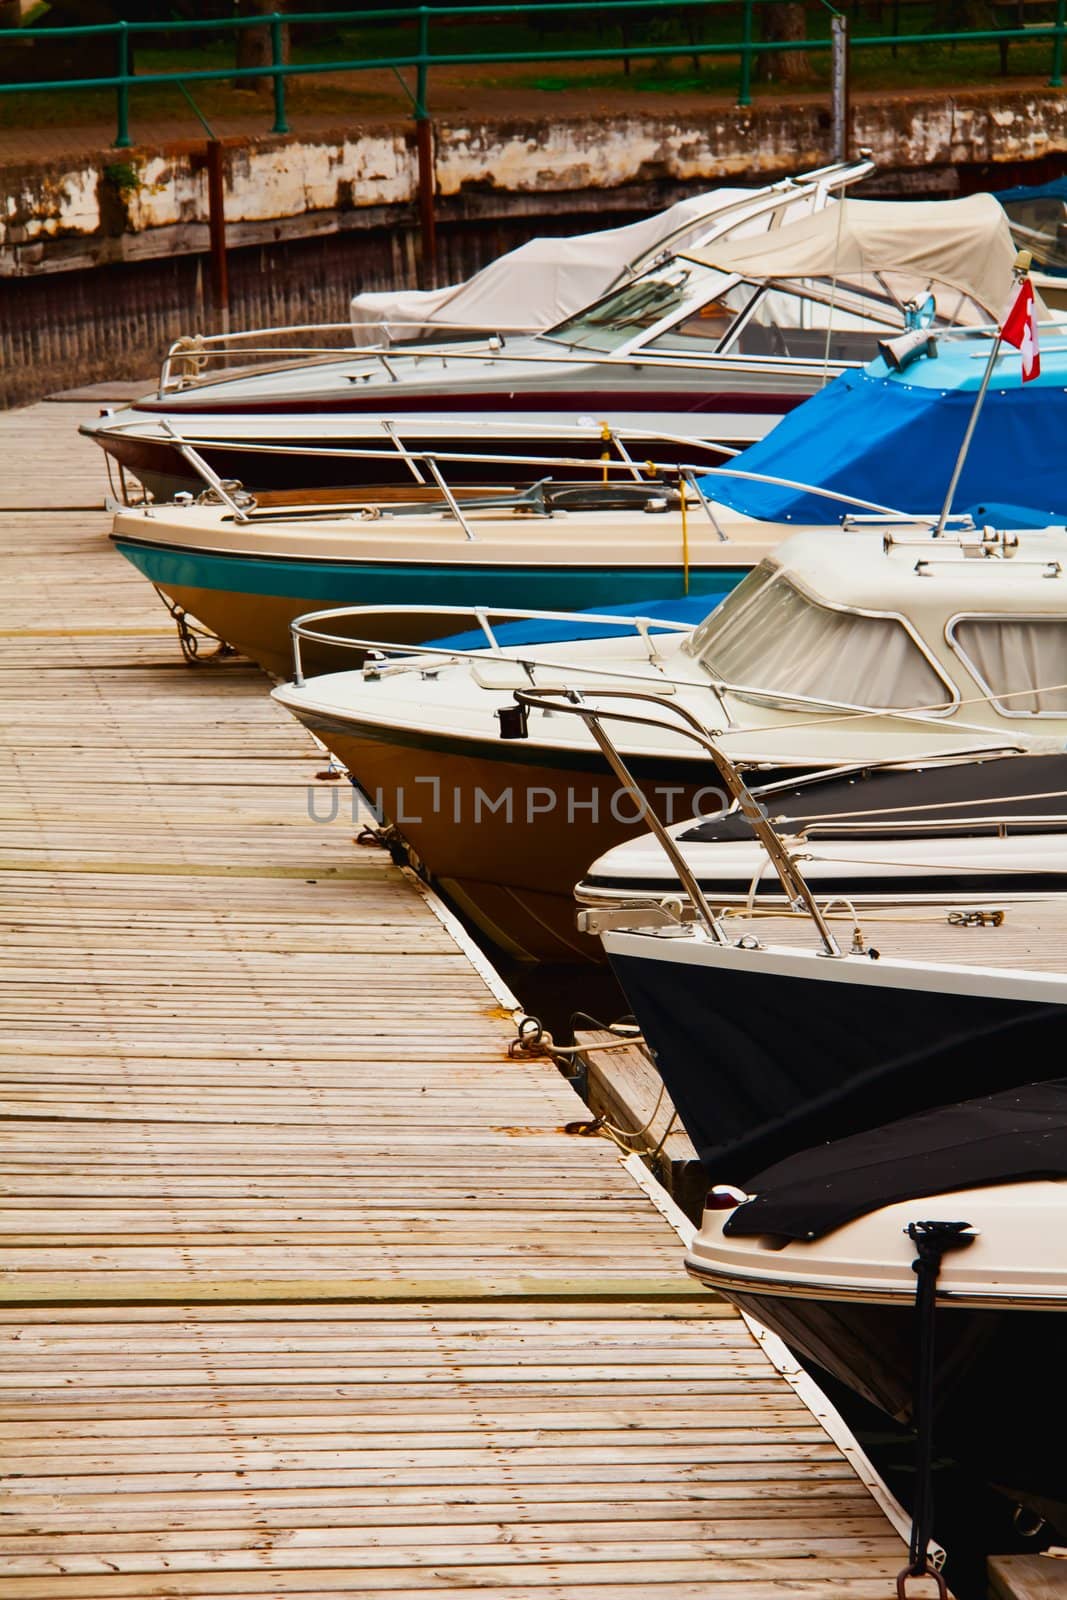 Docked Boats by RachelD32